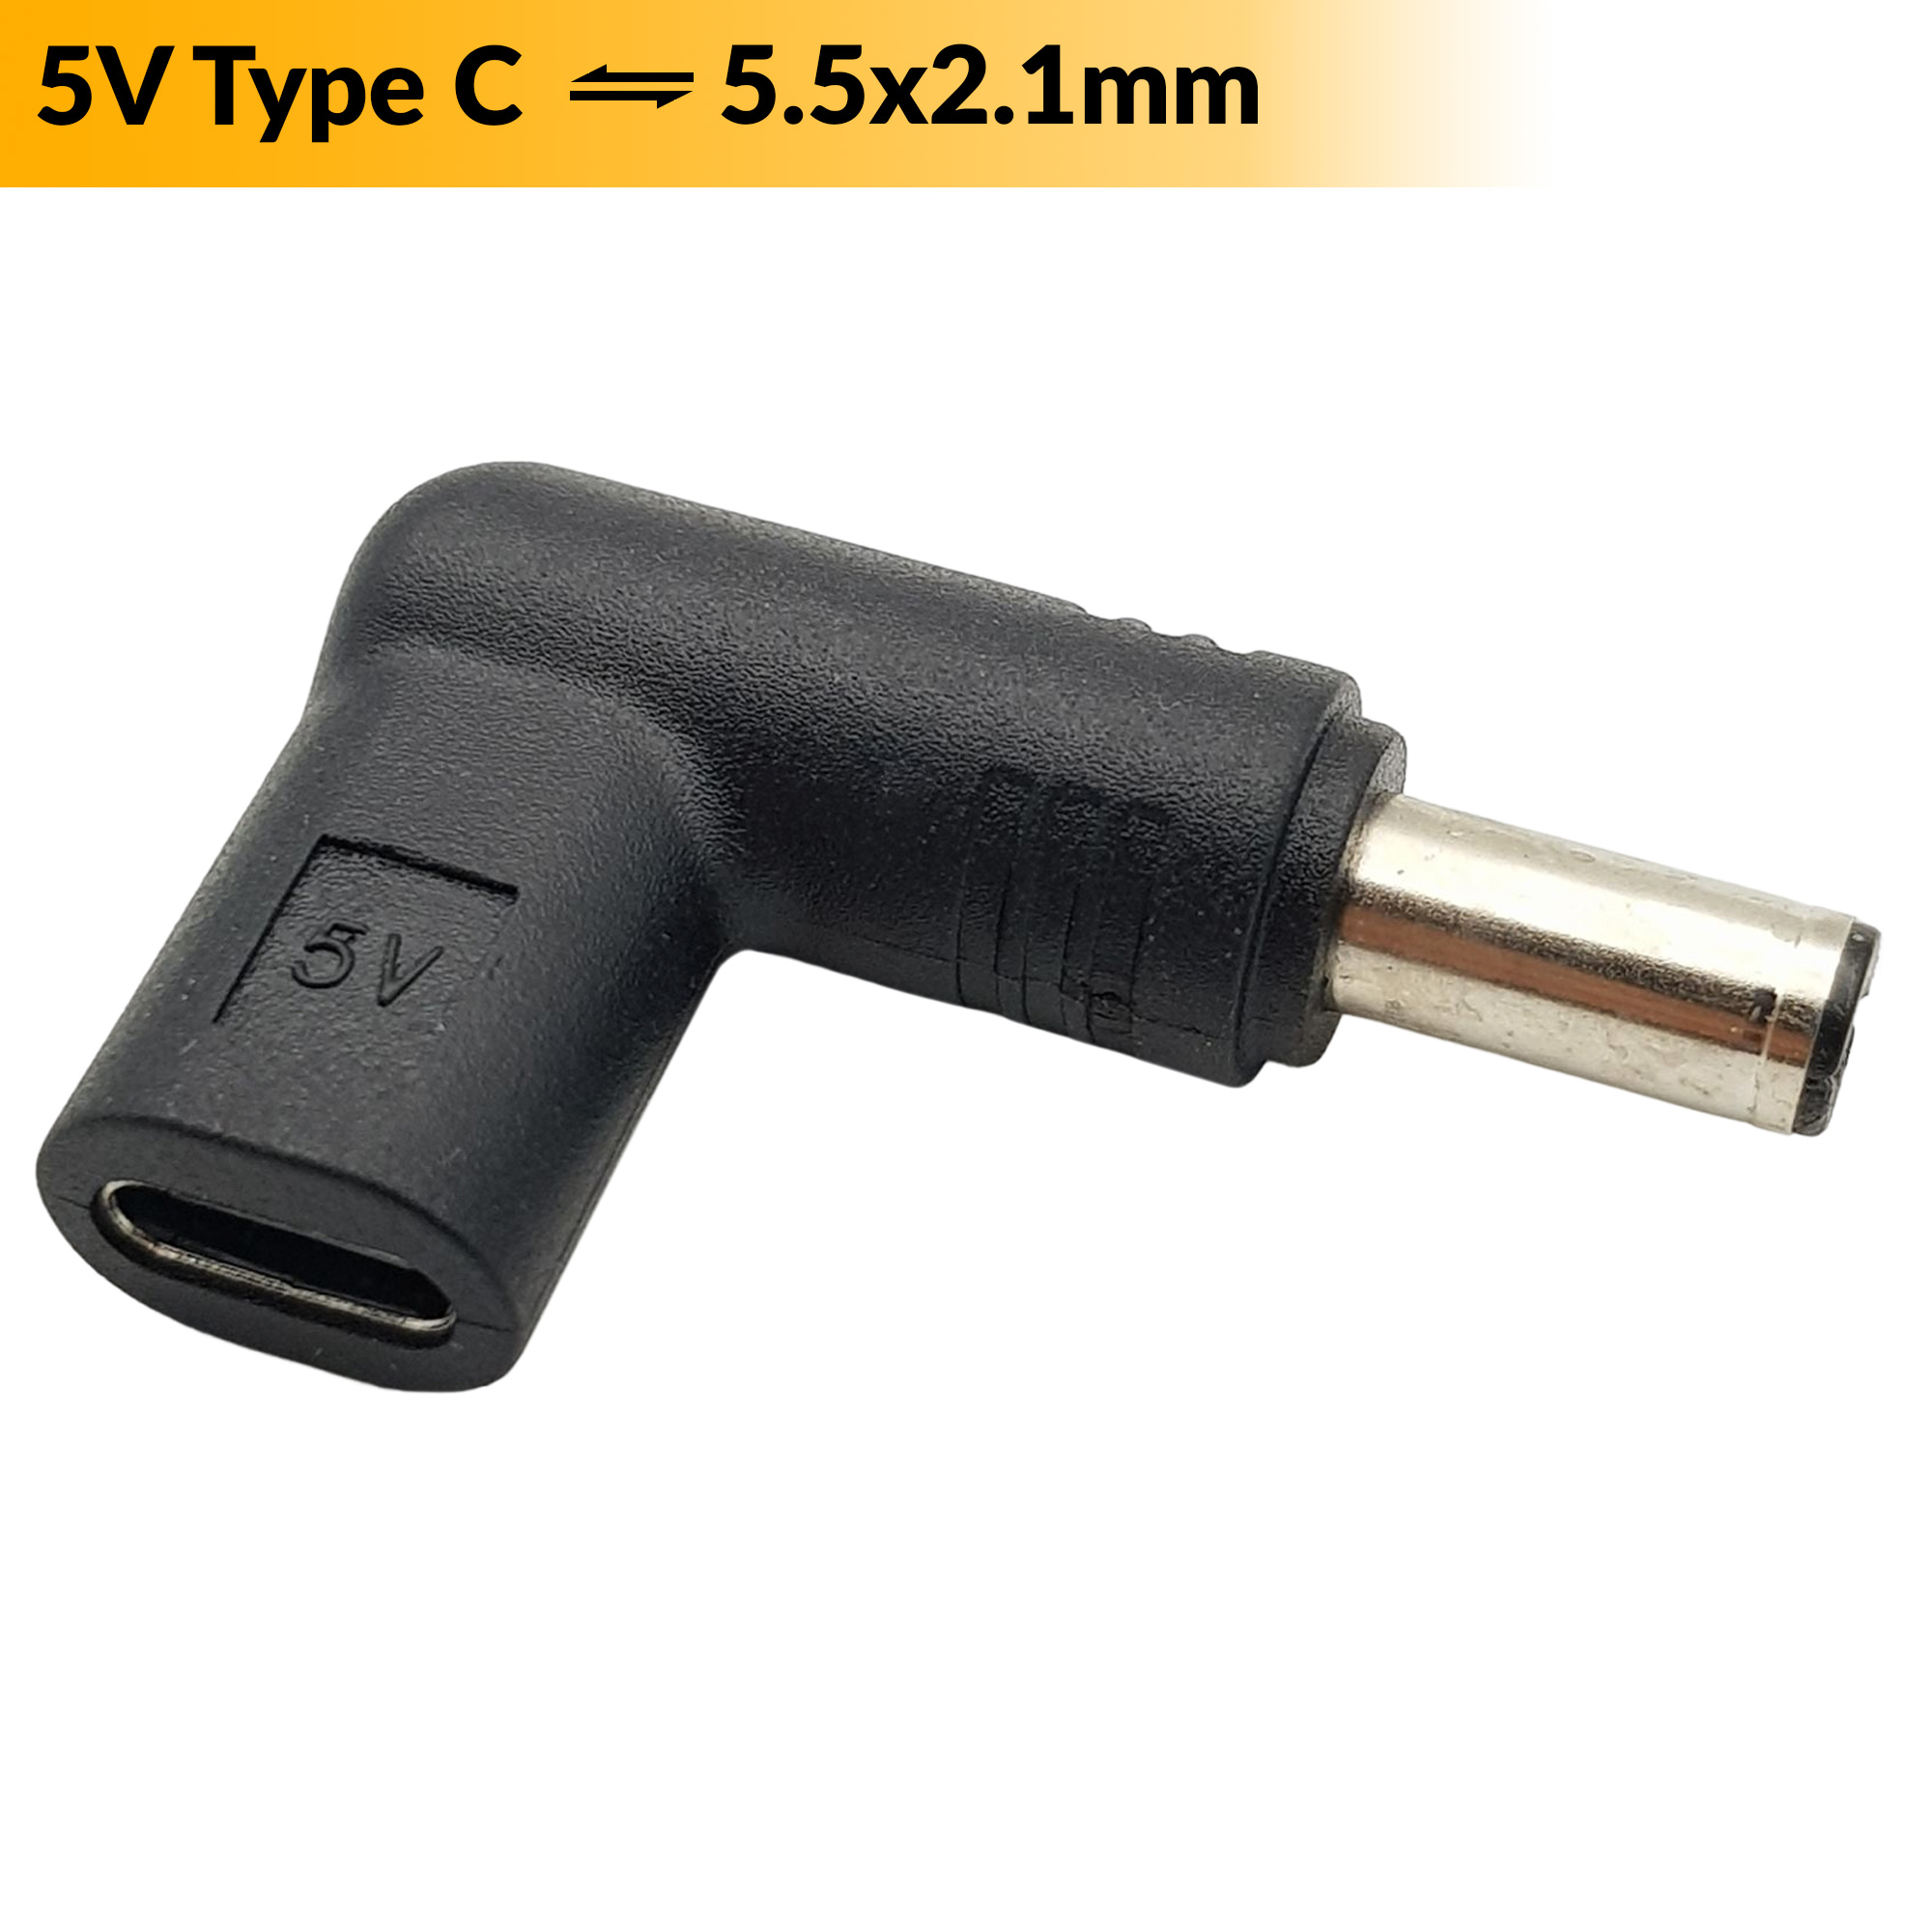 Đầu chuyển đổi USB Type C sang Jack DC 5.5x2.1mm (5v)